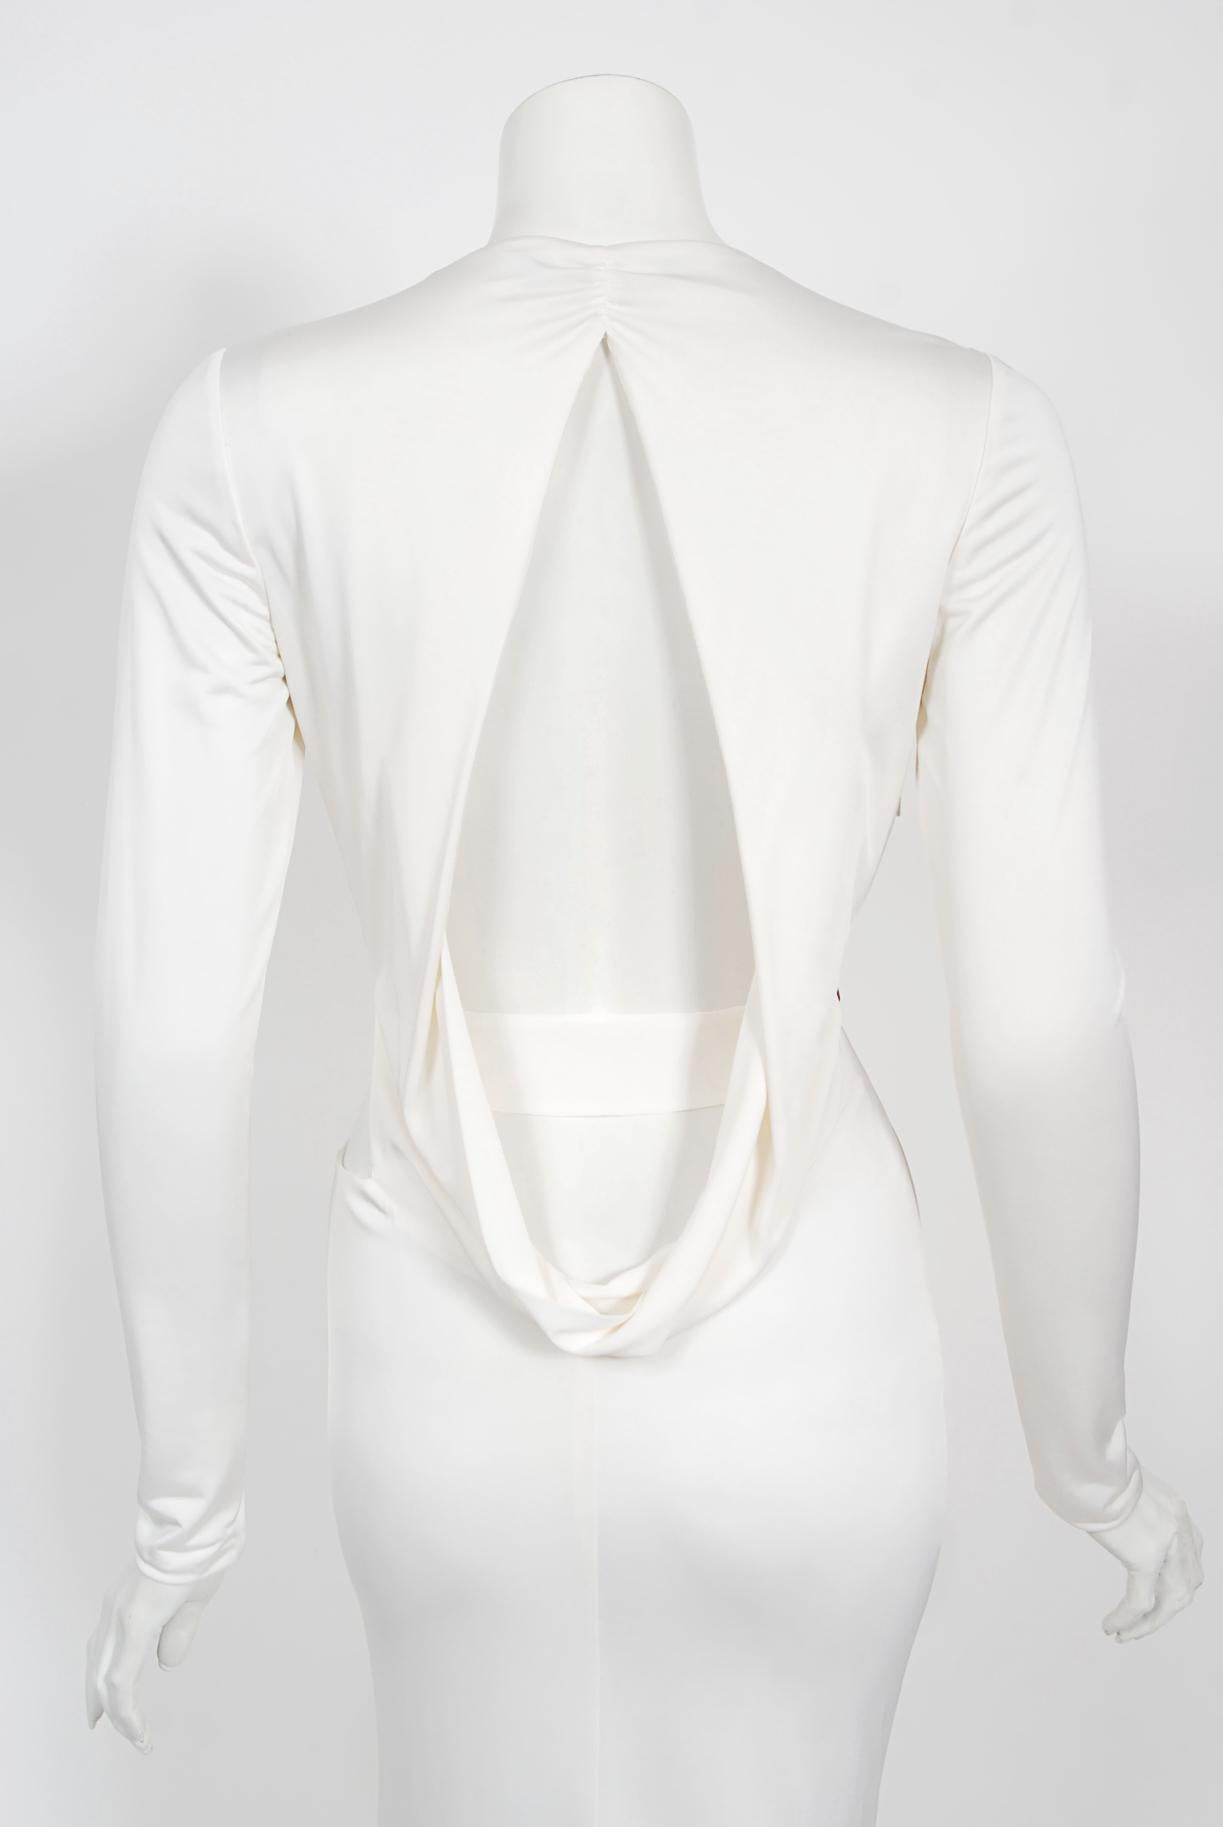 Gucci par Tom Ford - Robe finale en jersey de soie blanc avec découpes et découpes, rare, 2004 11